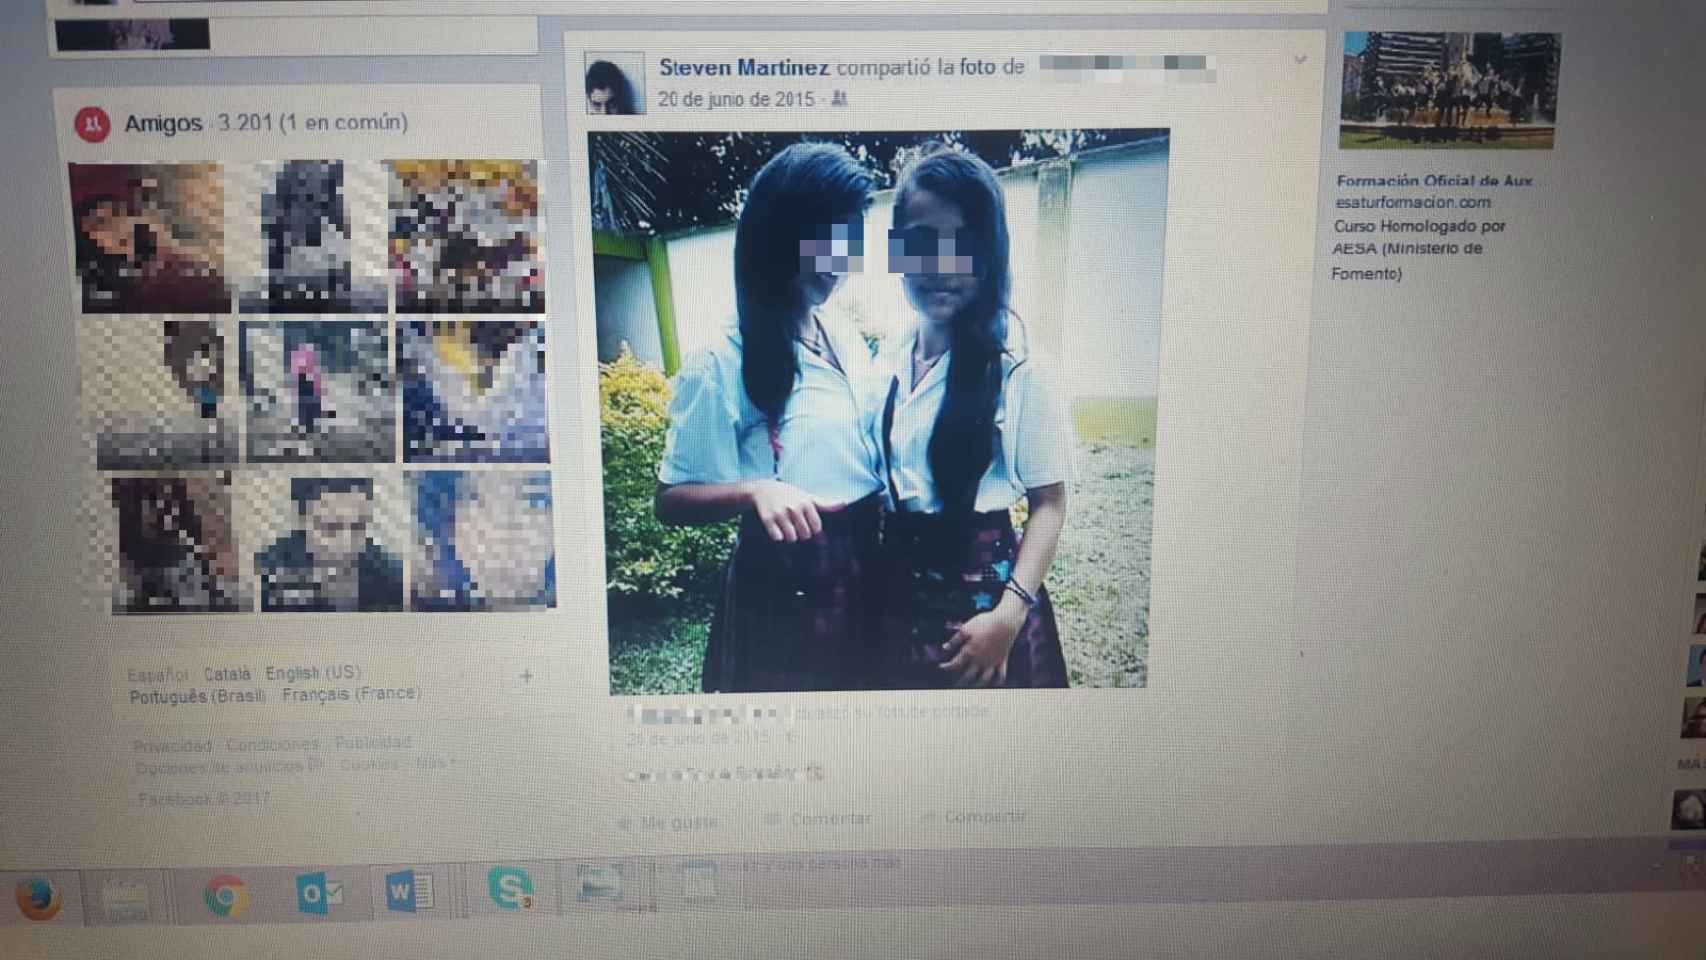 Imagen de dos colegialas posando para él compartida por el falso gurú.